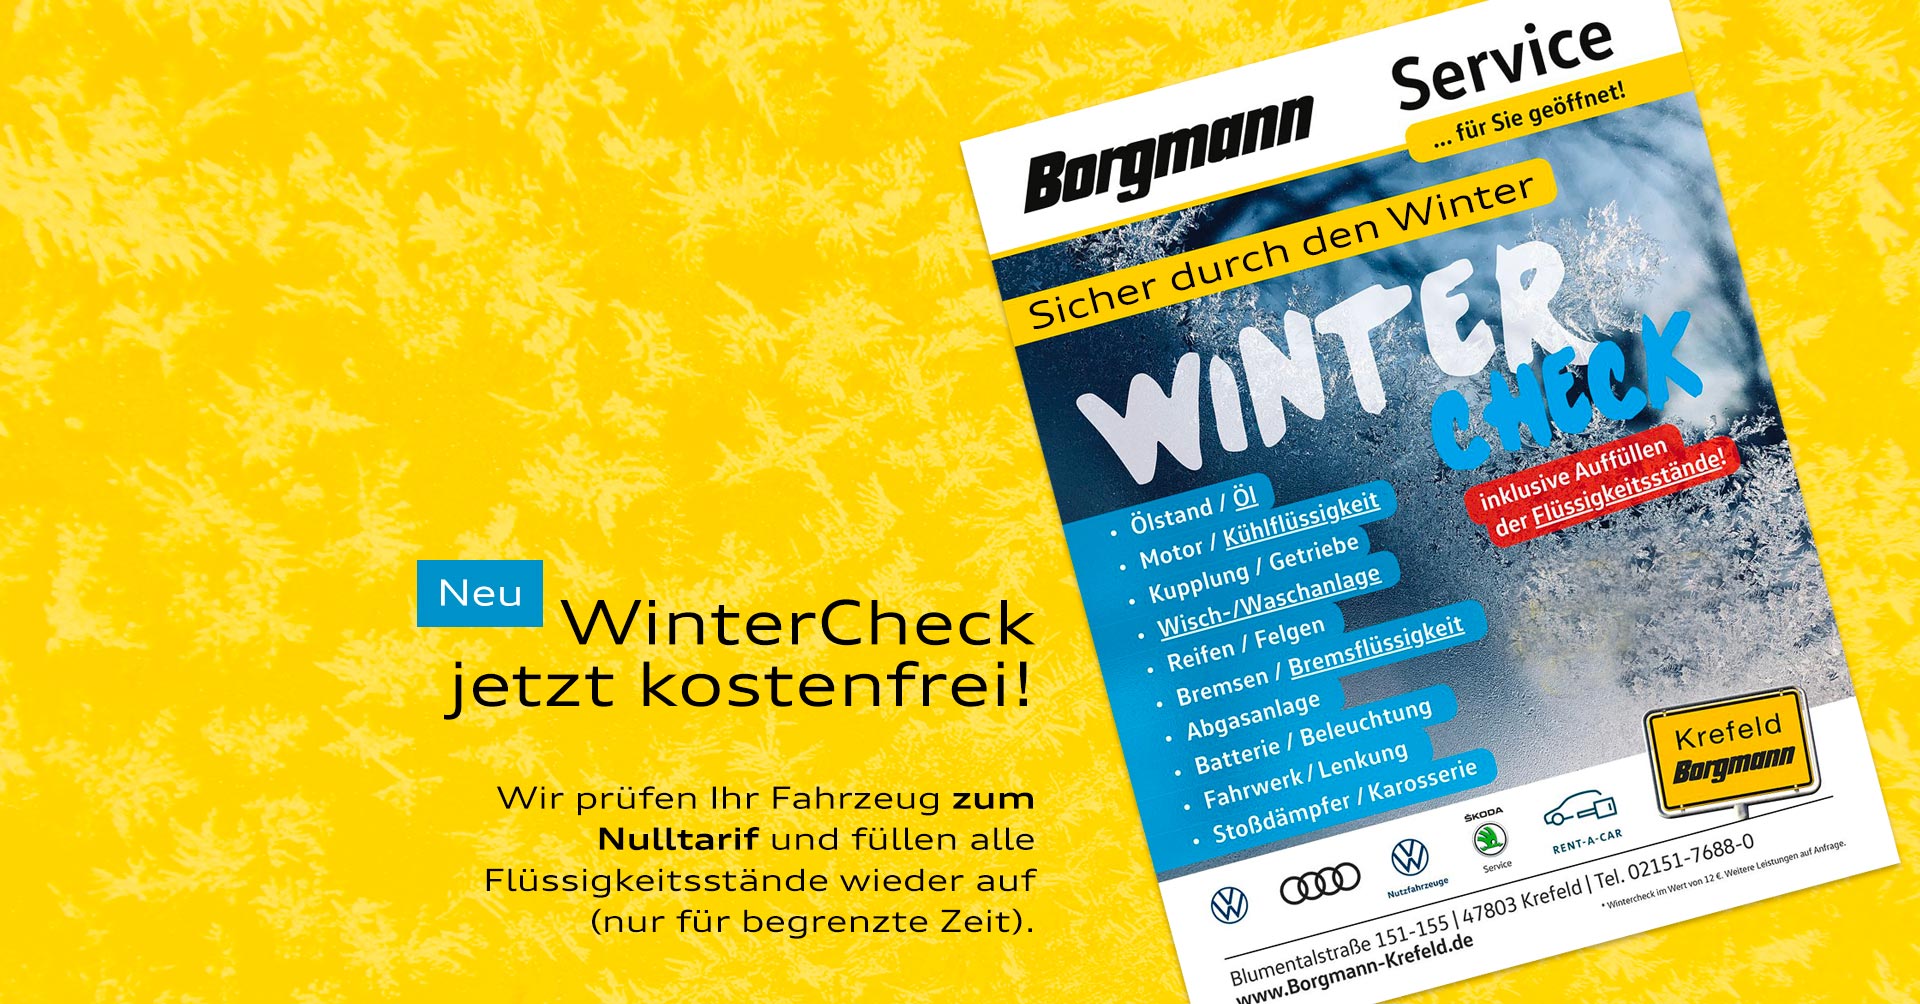 Autohaus Borgmann Wintercheck jetzt kostenfrei